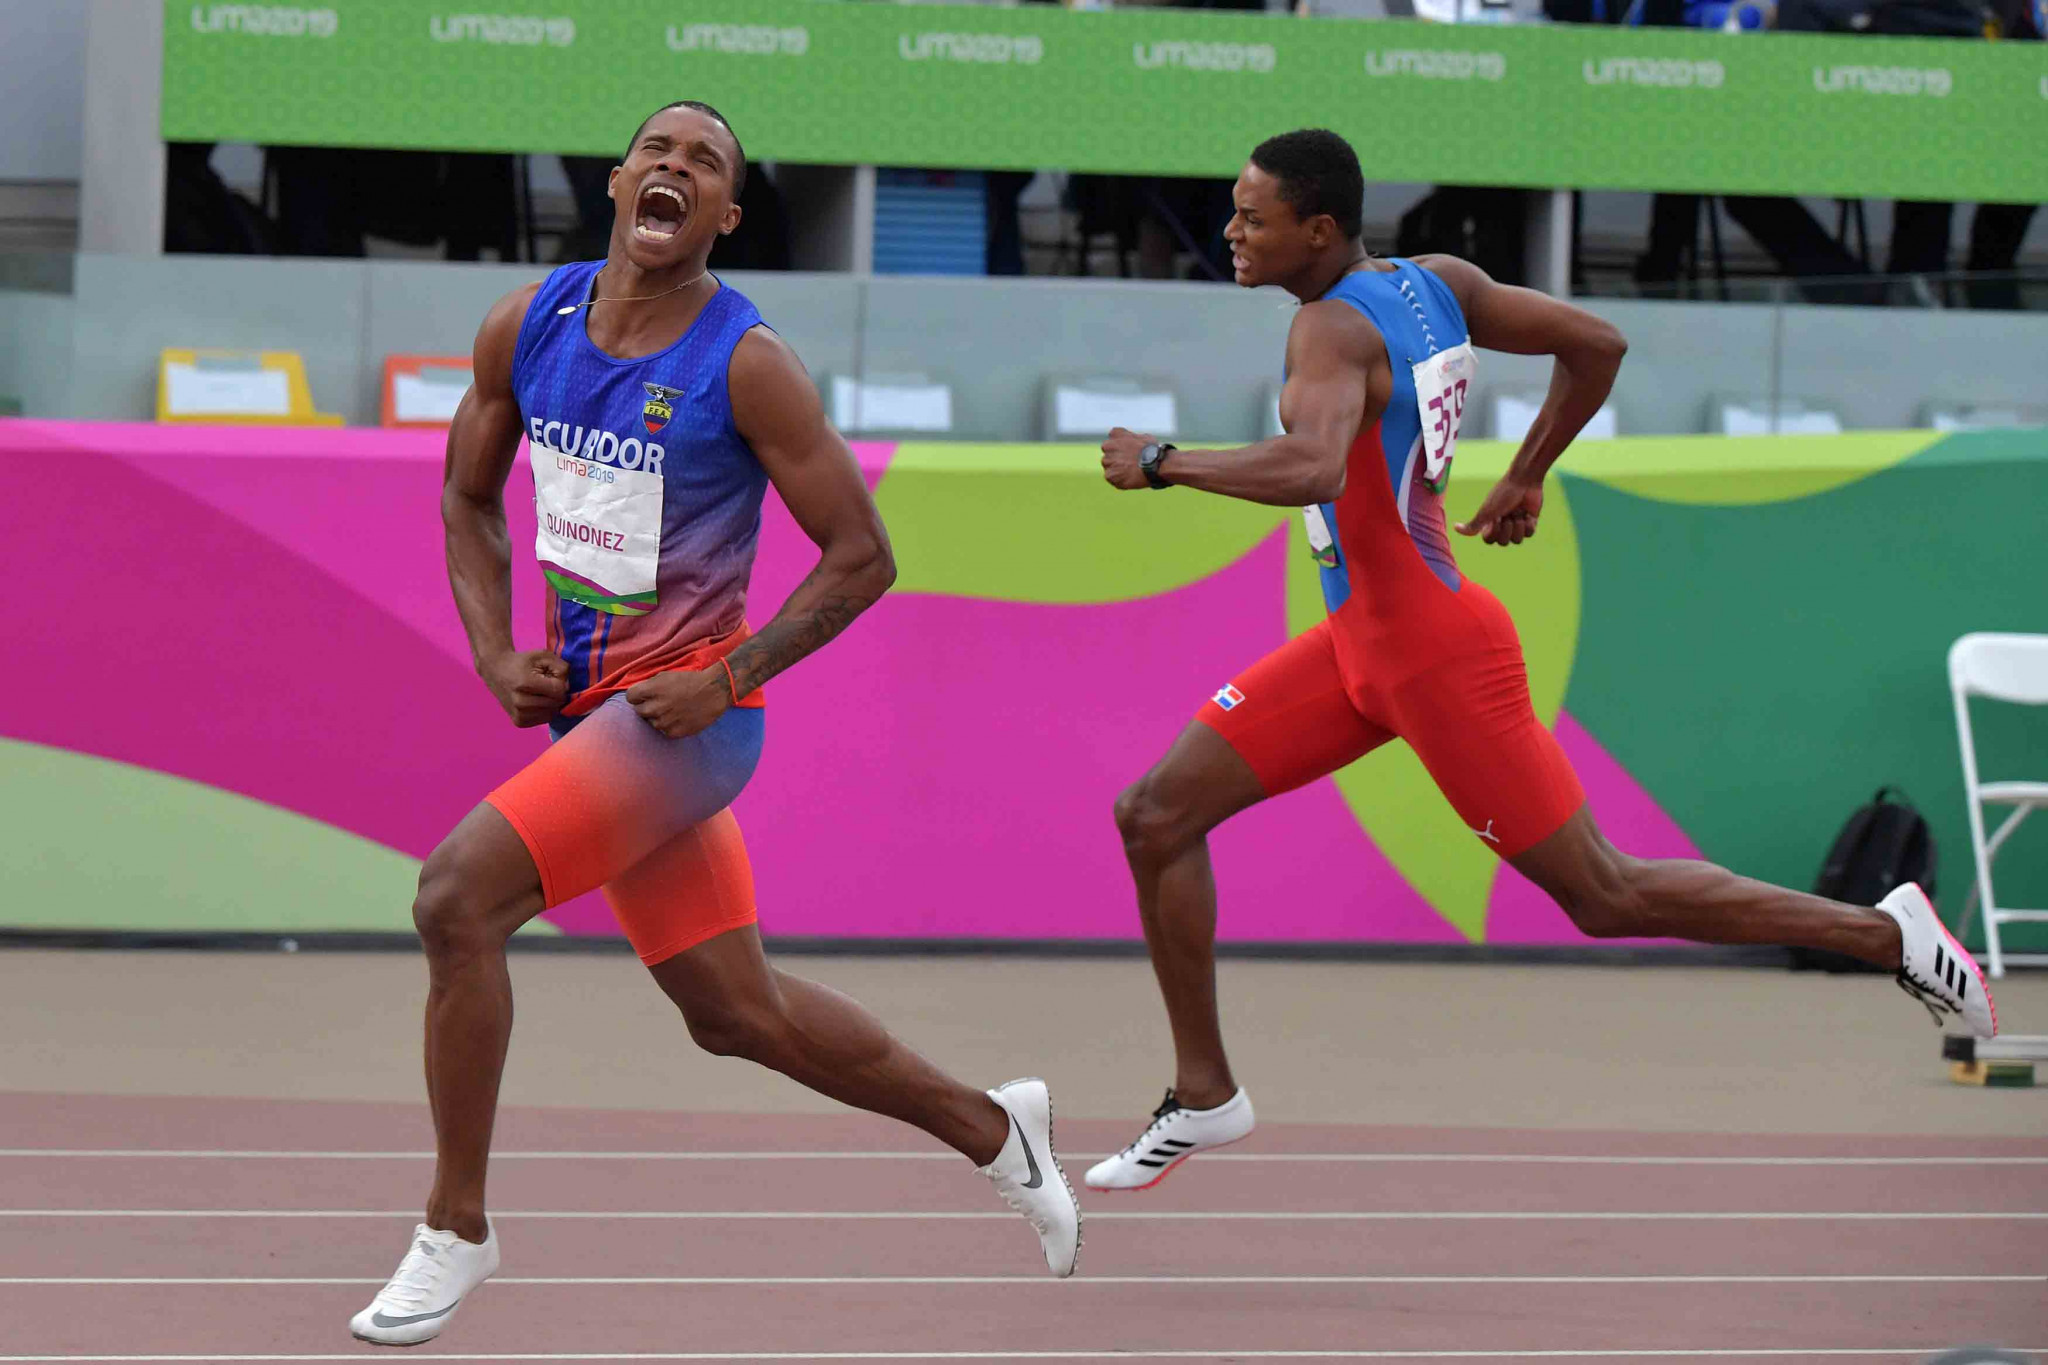 Ecuador's Alex Quinonez won the men's 200m title ©Getty Images